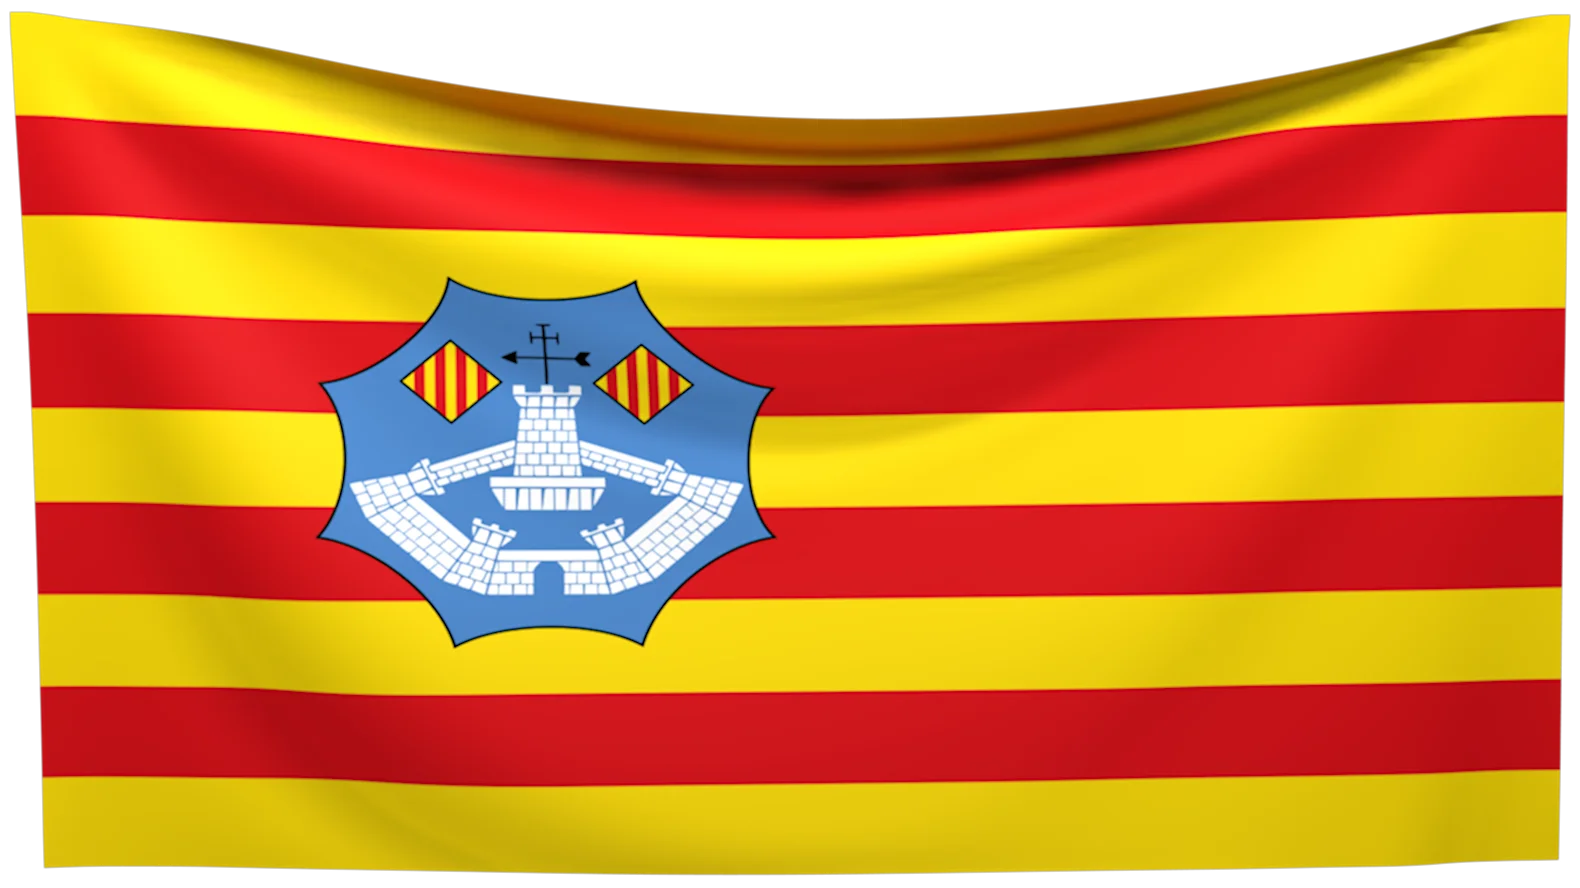 Bandera de Menorca